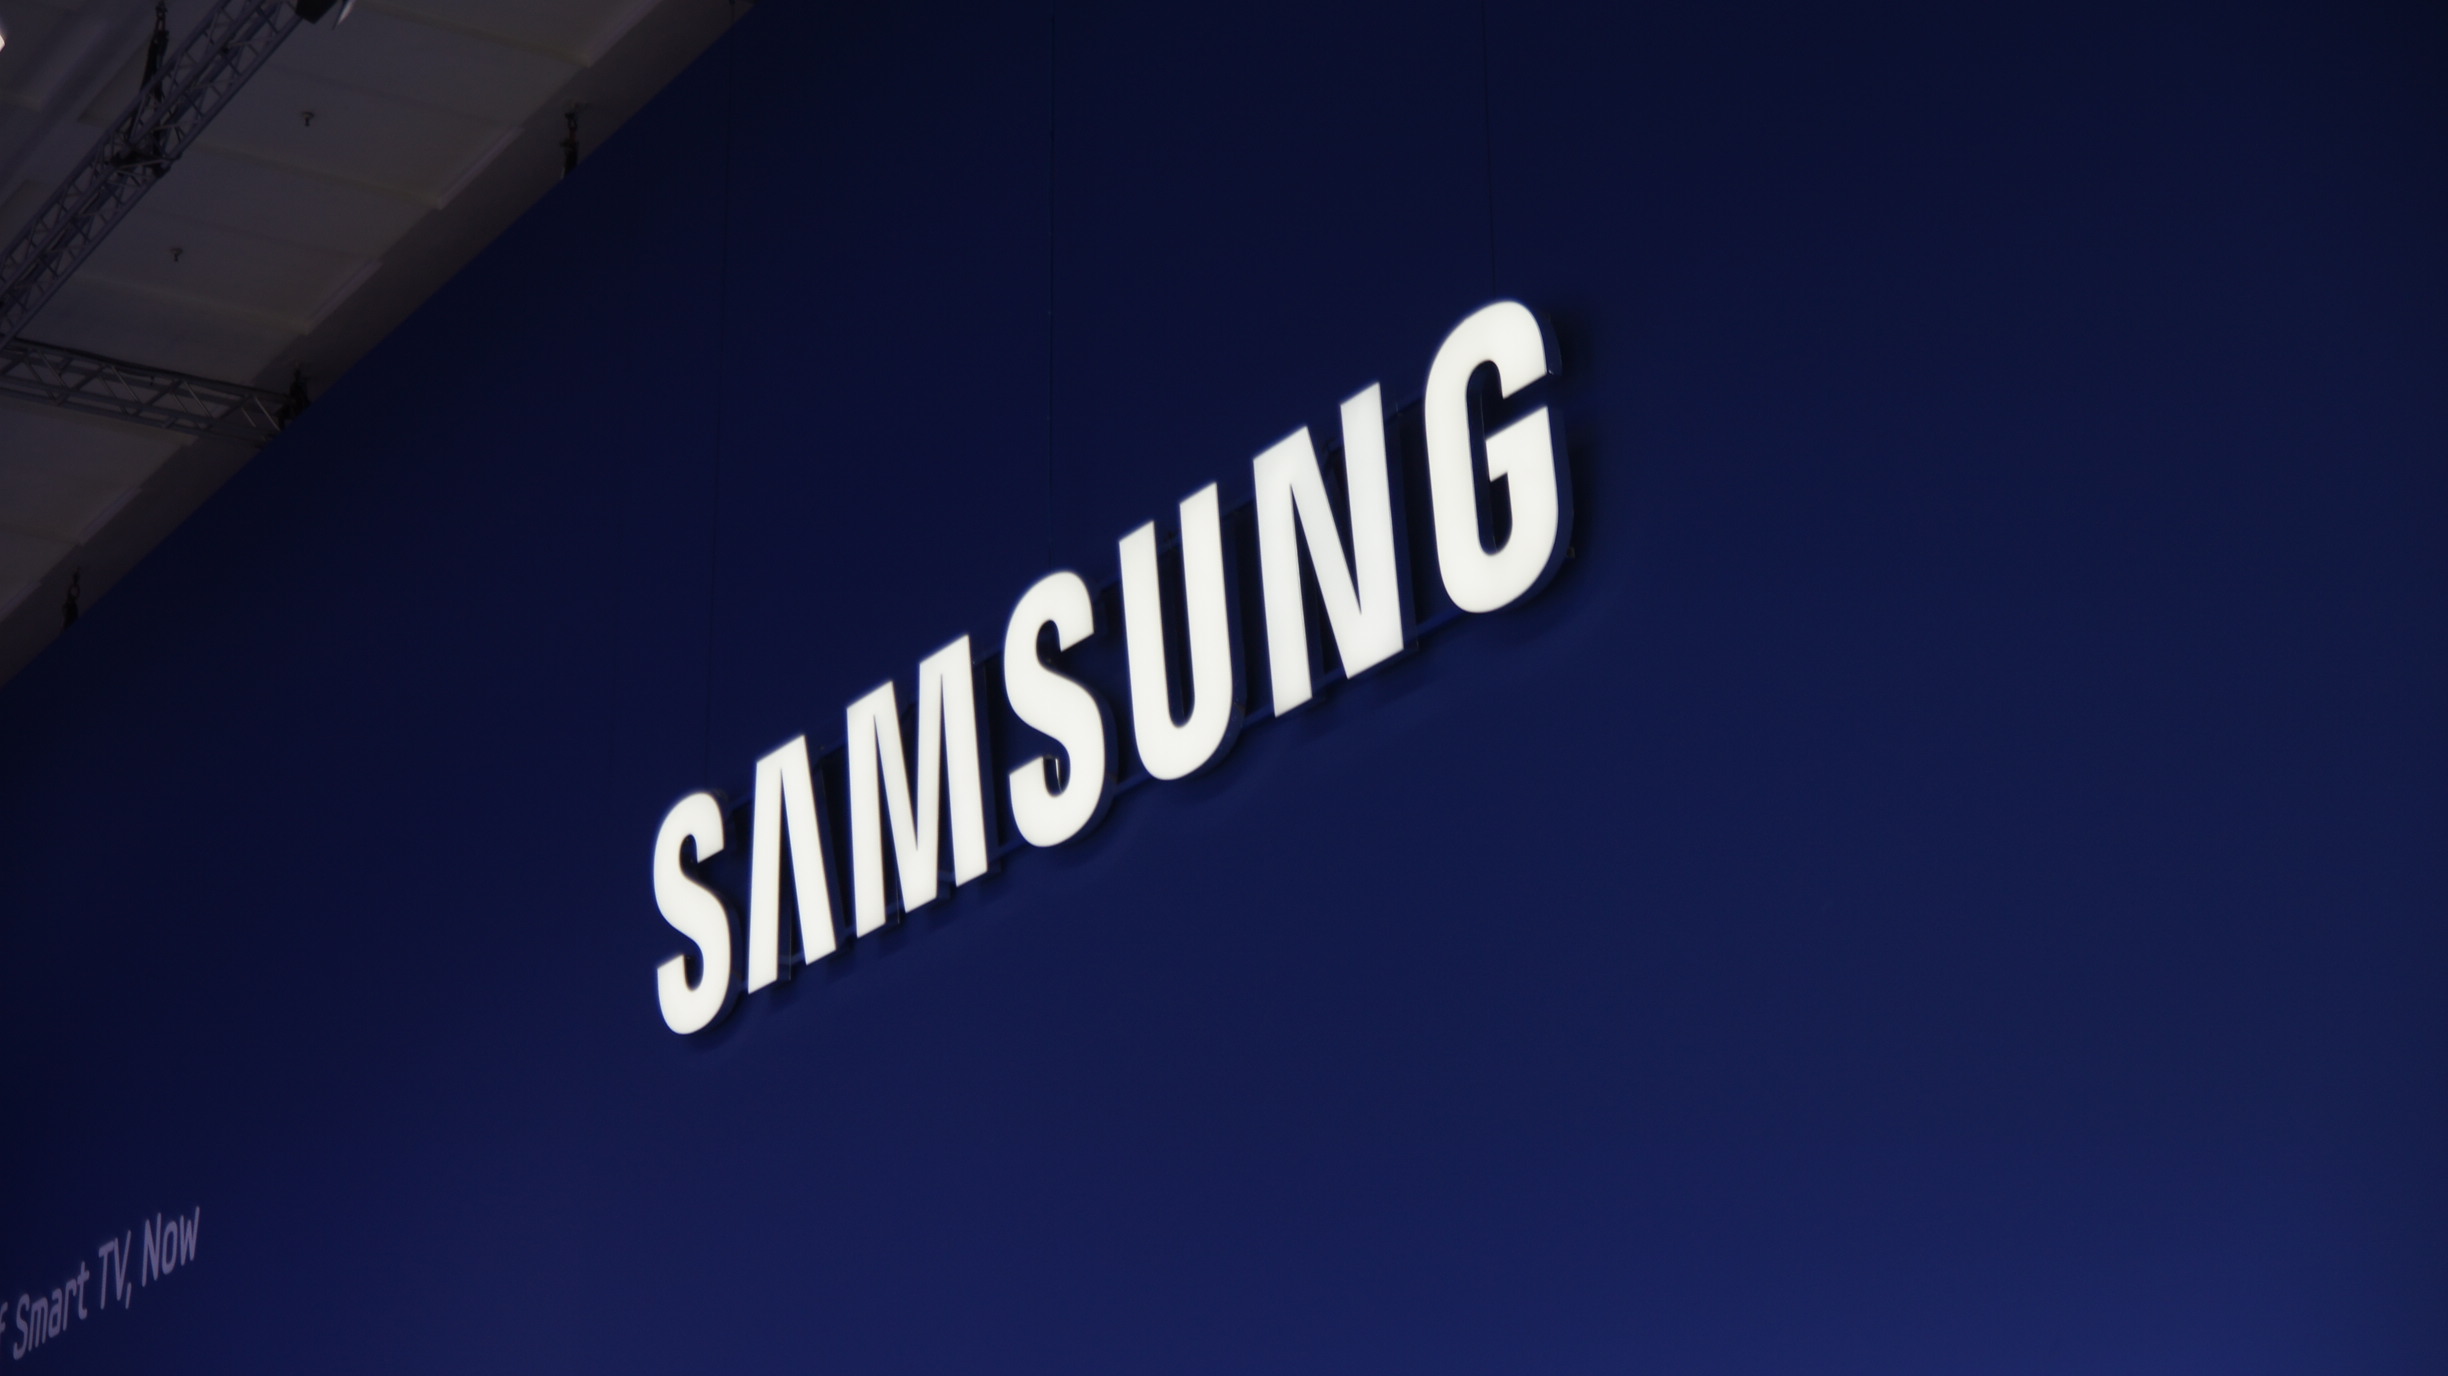 คาด Samsung กำลังยุ่งอยู่กับการพัฒนา Galaxy Tab A และ A Plus 2 แท๊บเล็ตระดับกลางรุ่นใหม่